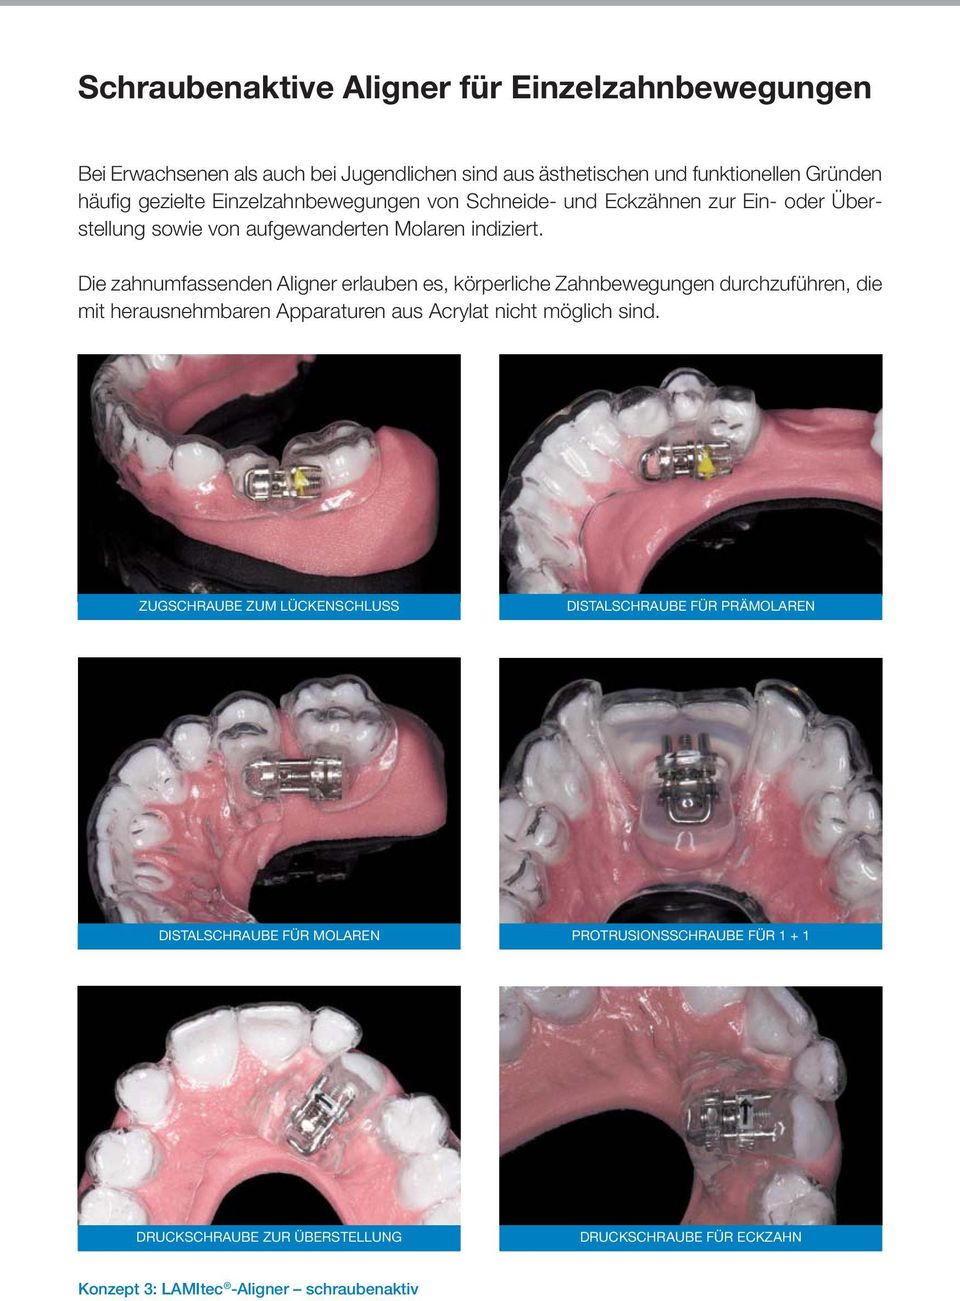 Die zahnumfassenden Aligner erlauben es, körperliche Zahnbewegungen durchzuführen, die mit herausnehmbaren Apparaturen aus Acrylat nicht möglich sind.